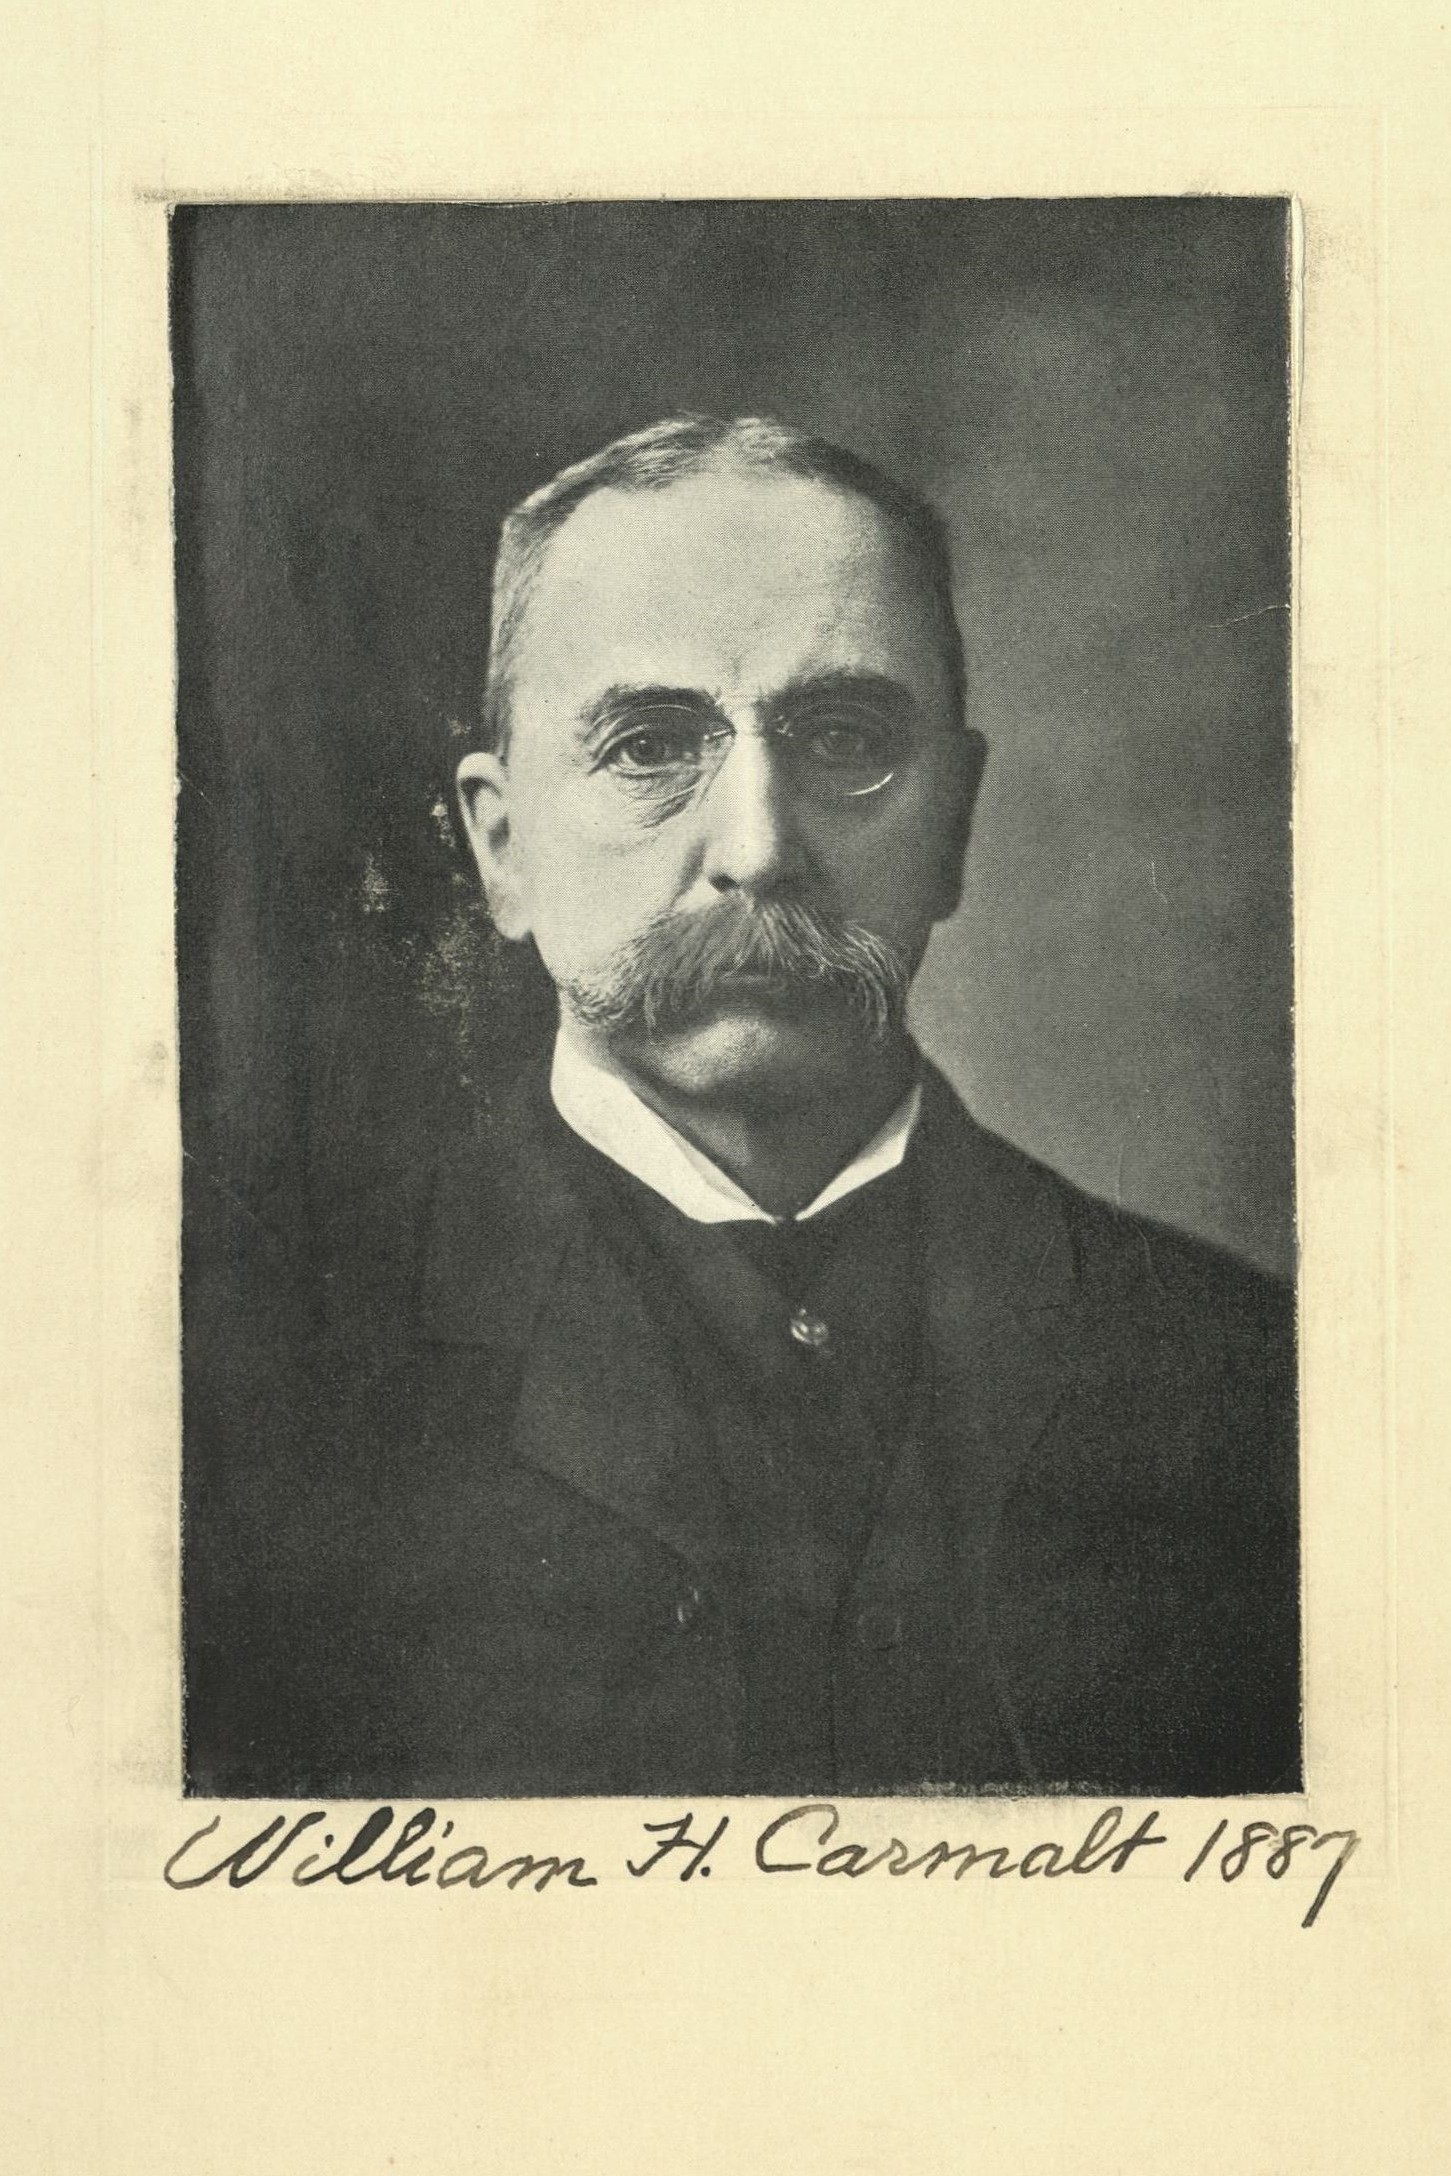 Member portrait of William H. Carmalt